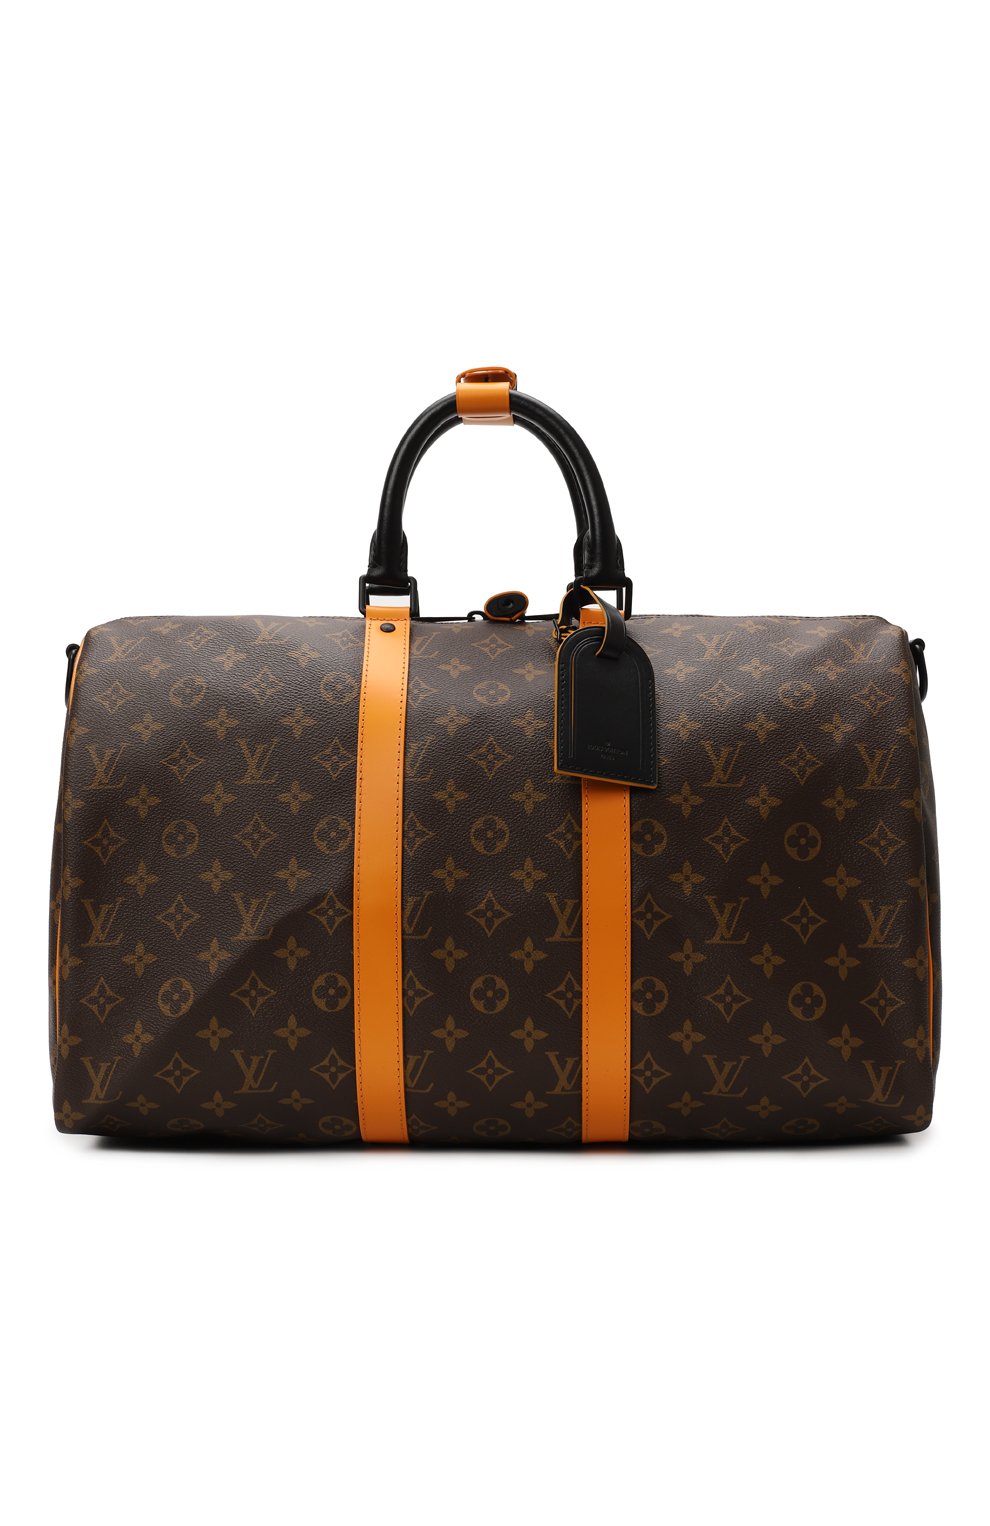 Дорожная сумка Keepall Bandoulière 45 | Louis Vuitton | Коричневый - 1